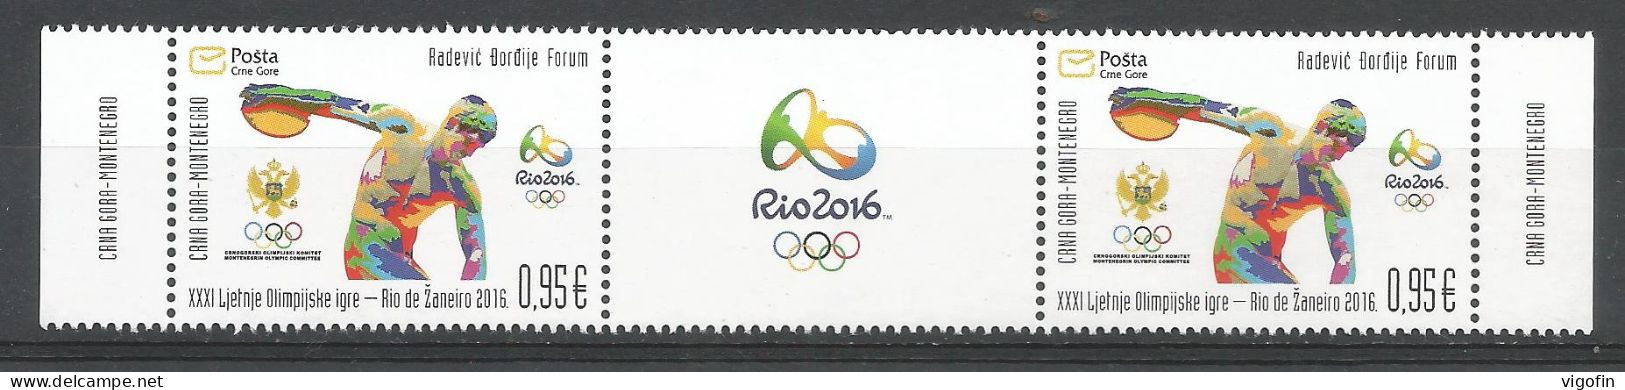 CG 2016-391 OLYMPIC GAMES RIO, CRNA GORA MONTE NEGRO, 2 X 1v + Label, MNH - Sommer 2016: Rio De Janeiro